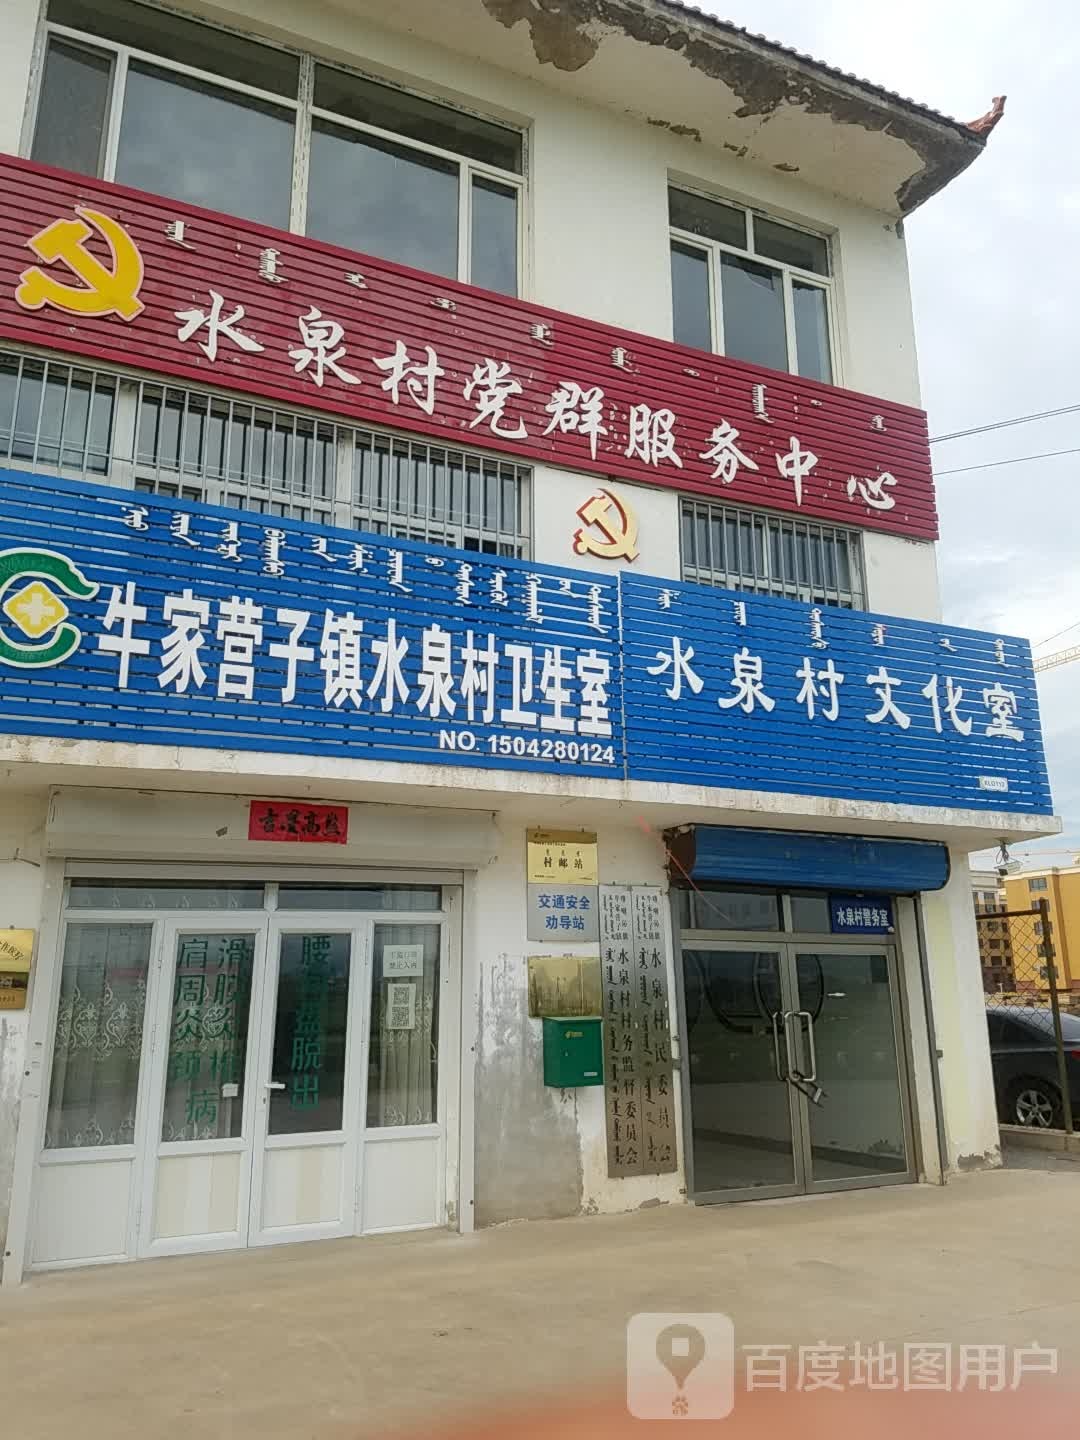 内蒙古自治区赤峰市喀喇沁旗天宝精品家具(206省道东)